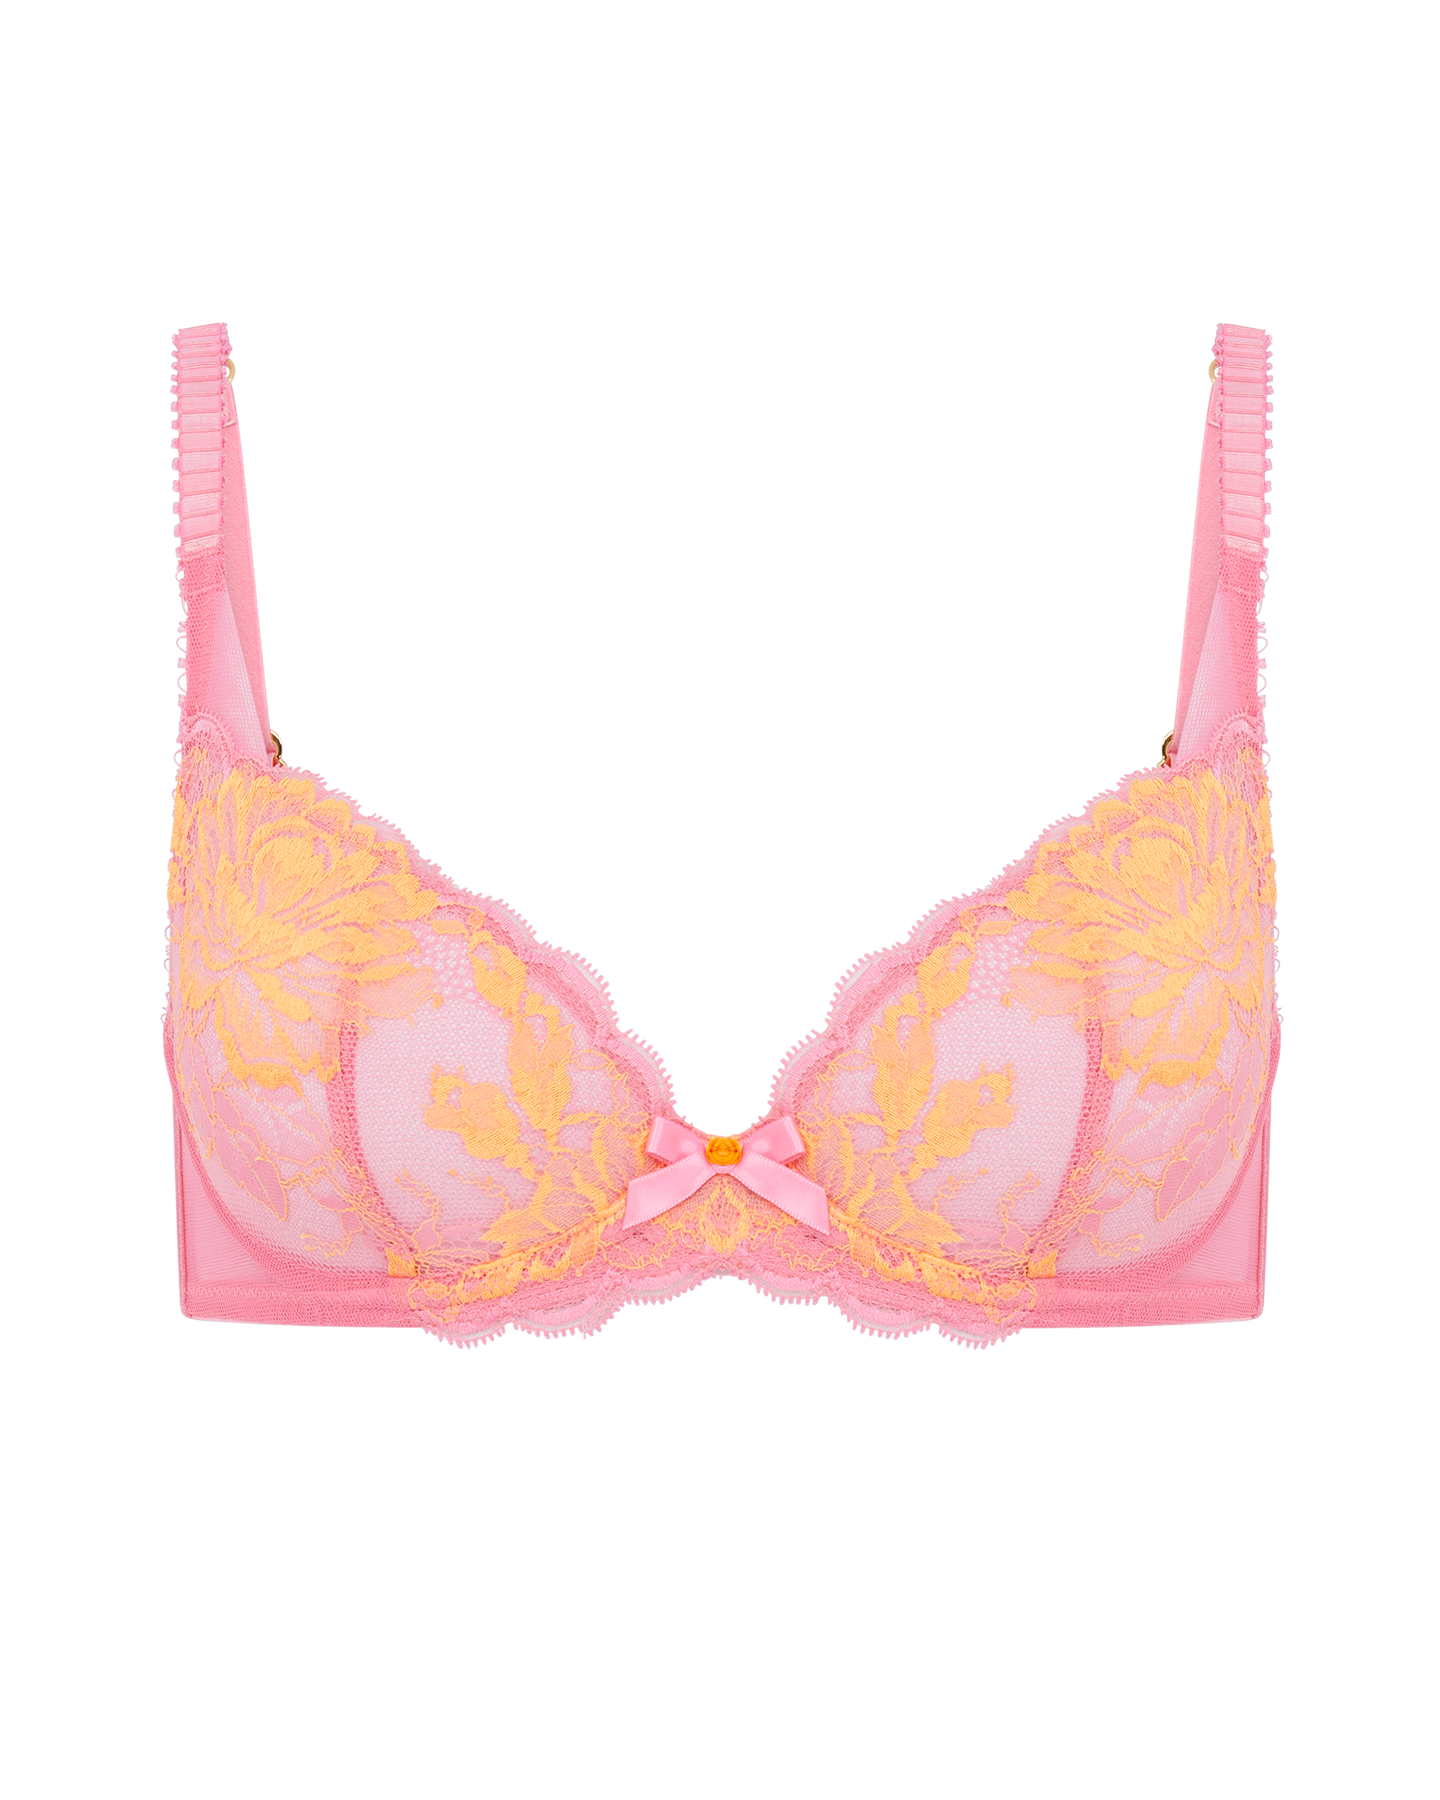 Bubble Gum Pink Victoria's Secret Bra - Size 32C